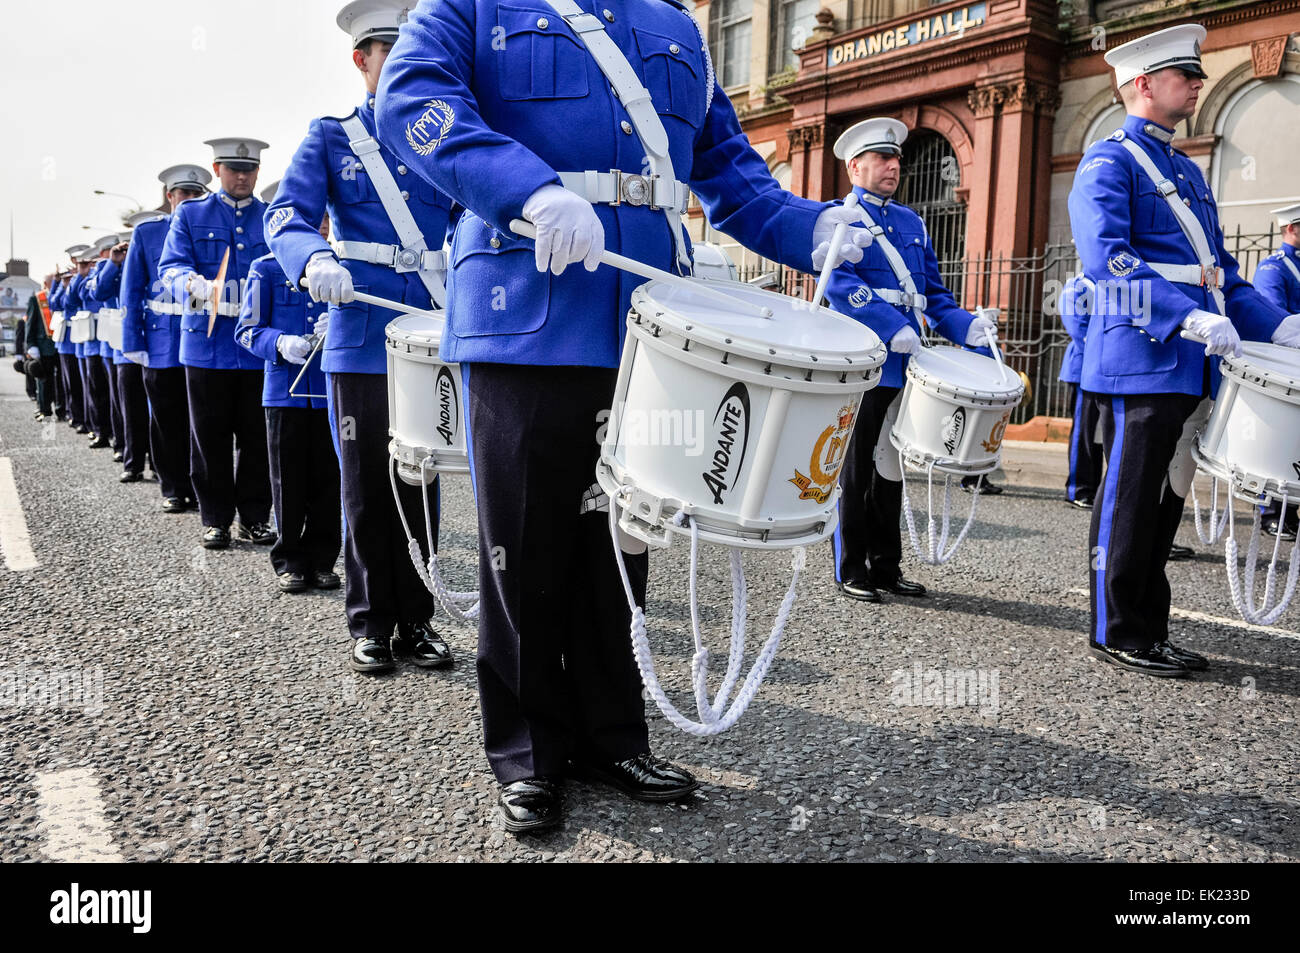 Belfast, Nordirland. 12. Juli 2013 - bereitet die führende Band sich auf die jährliche Parade von Clifton Street Orange Hall beginnen Stockfoto